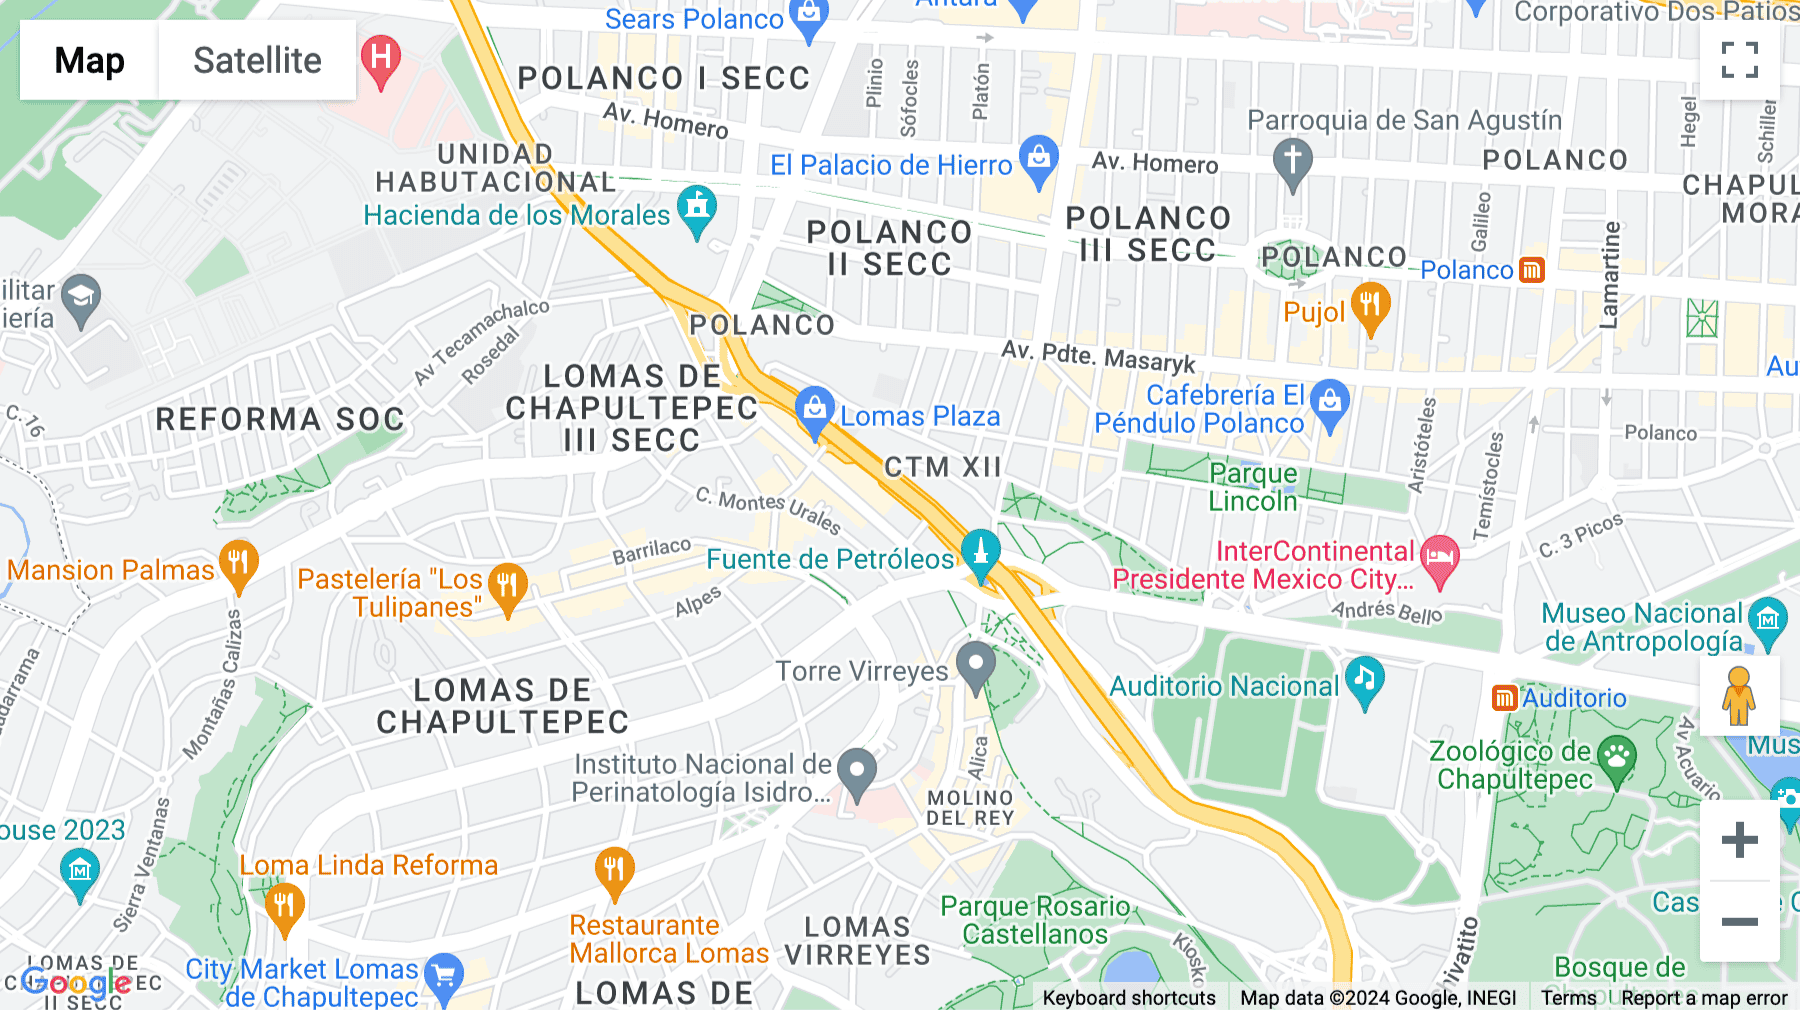 Click for interative map of Boulevard Manuel Ávila Camacho No.32, Col. Lomas de Chapultepec, piso 6, Del. Miguel Hidalgo, Mexico City